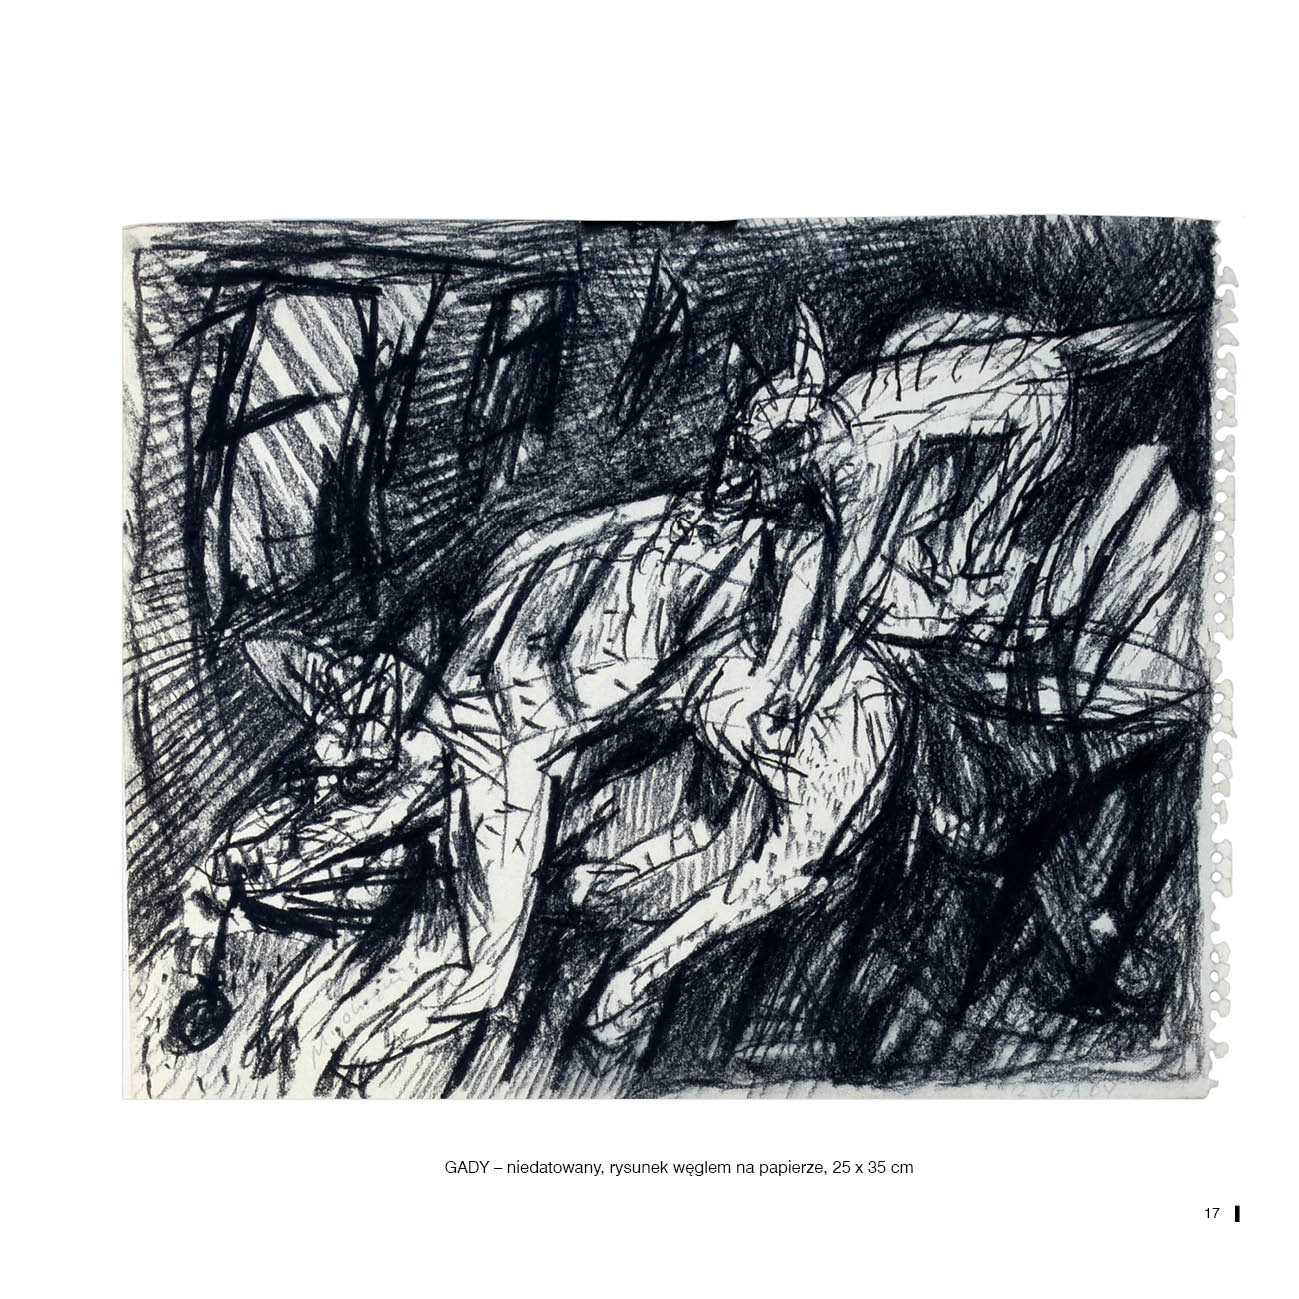 GADY – niedatowany, rysunek węglem na papierze, 25 x 35 cm